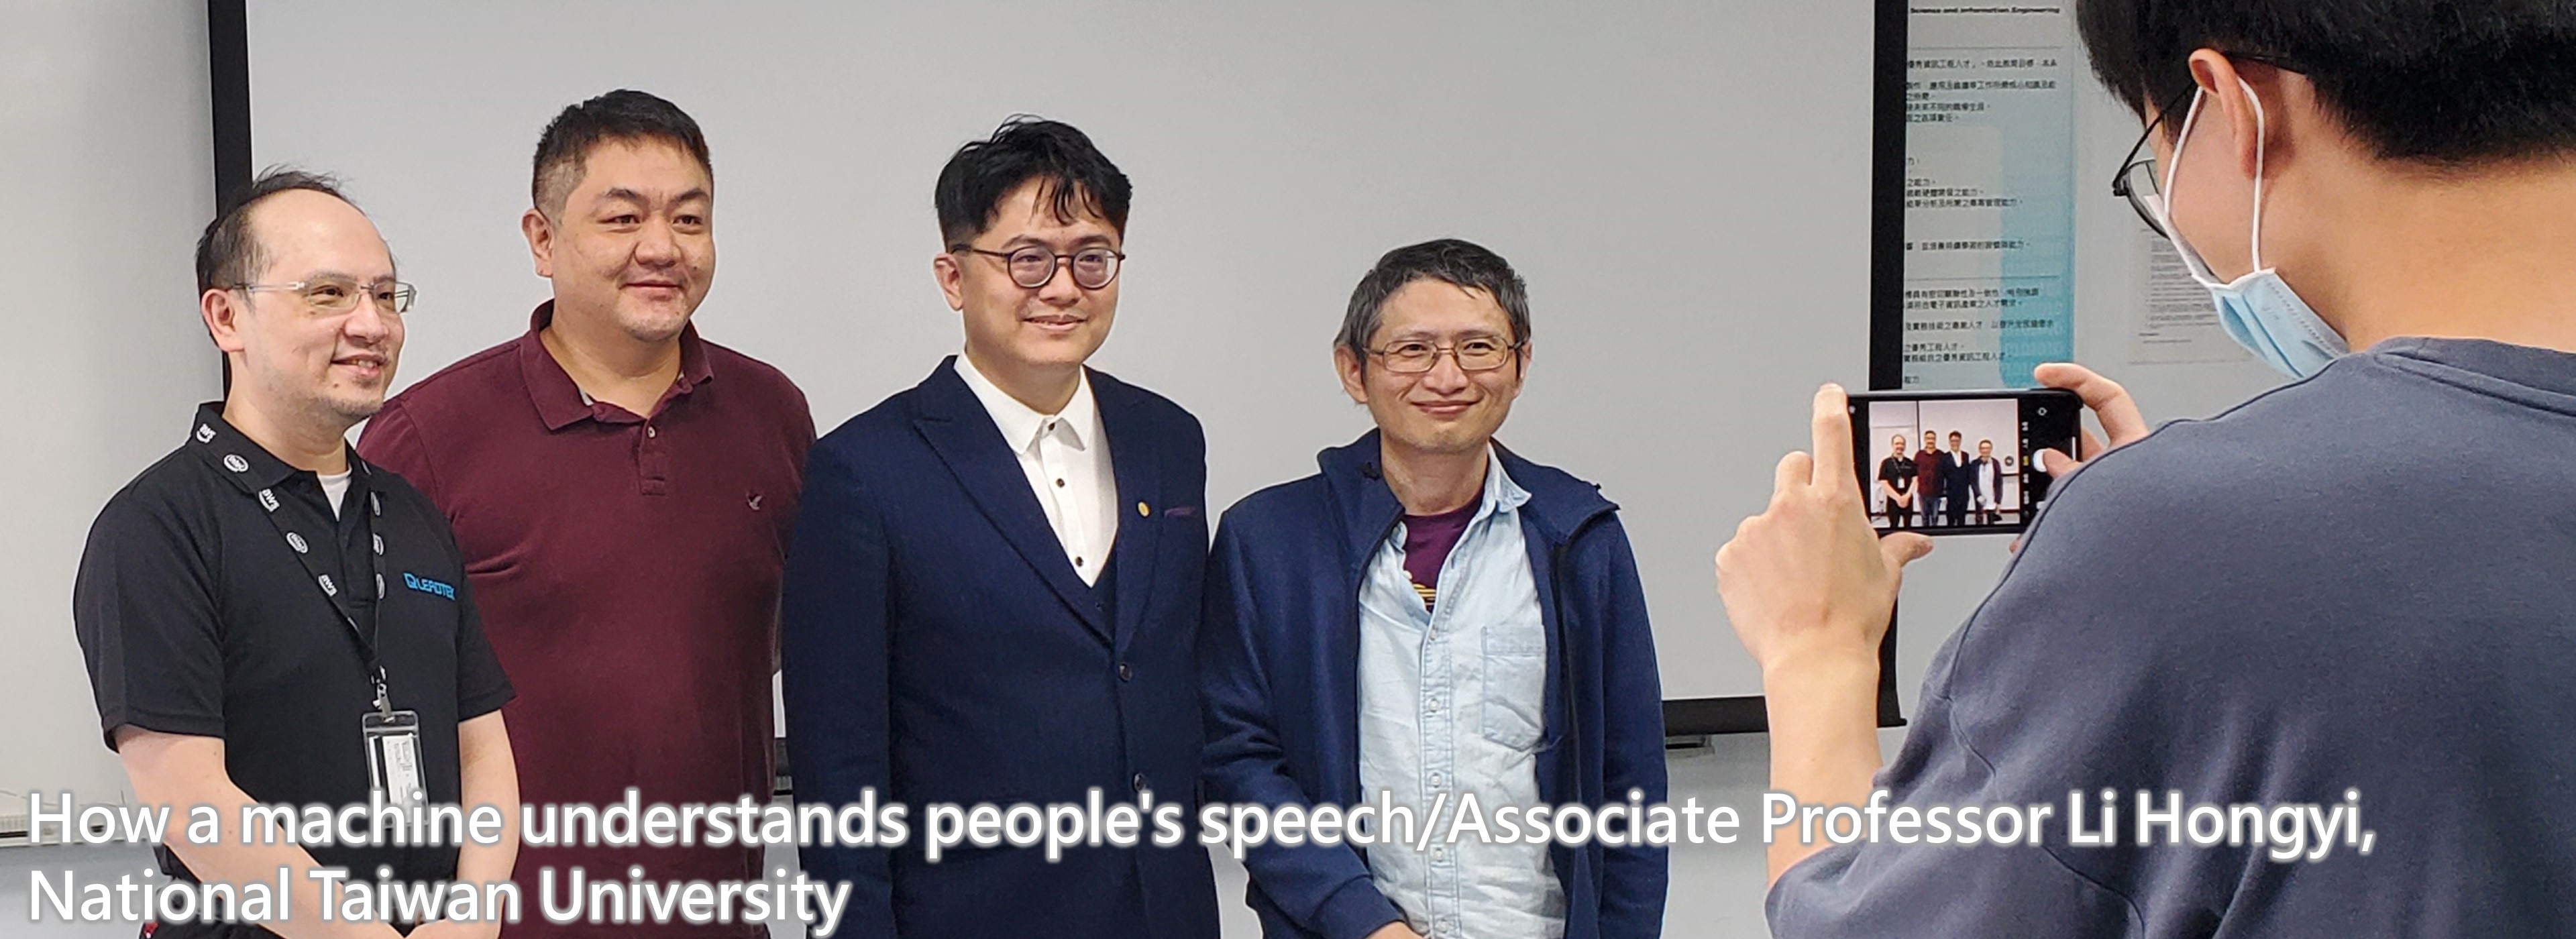 How a machine understands people's speech/Associate Professor Li Hongyi, National Taiwan University